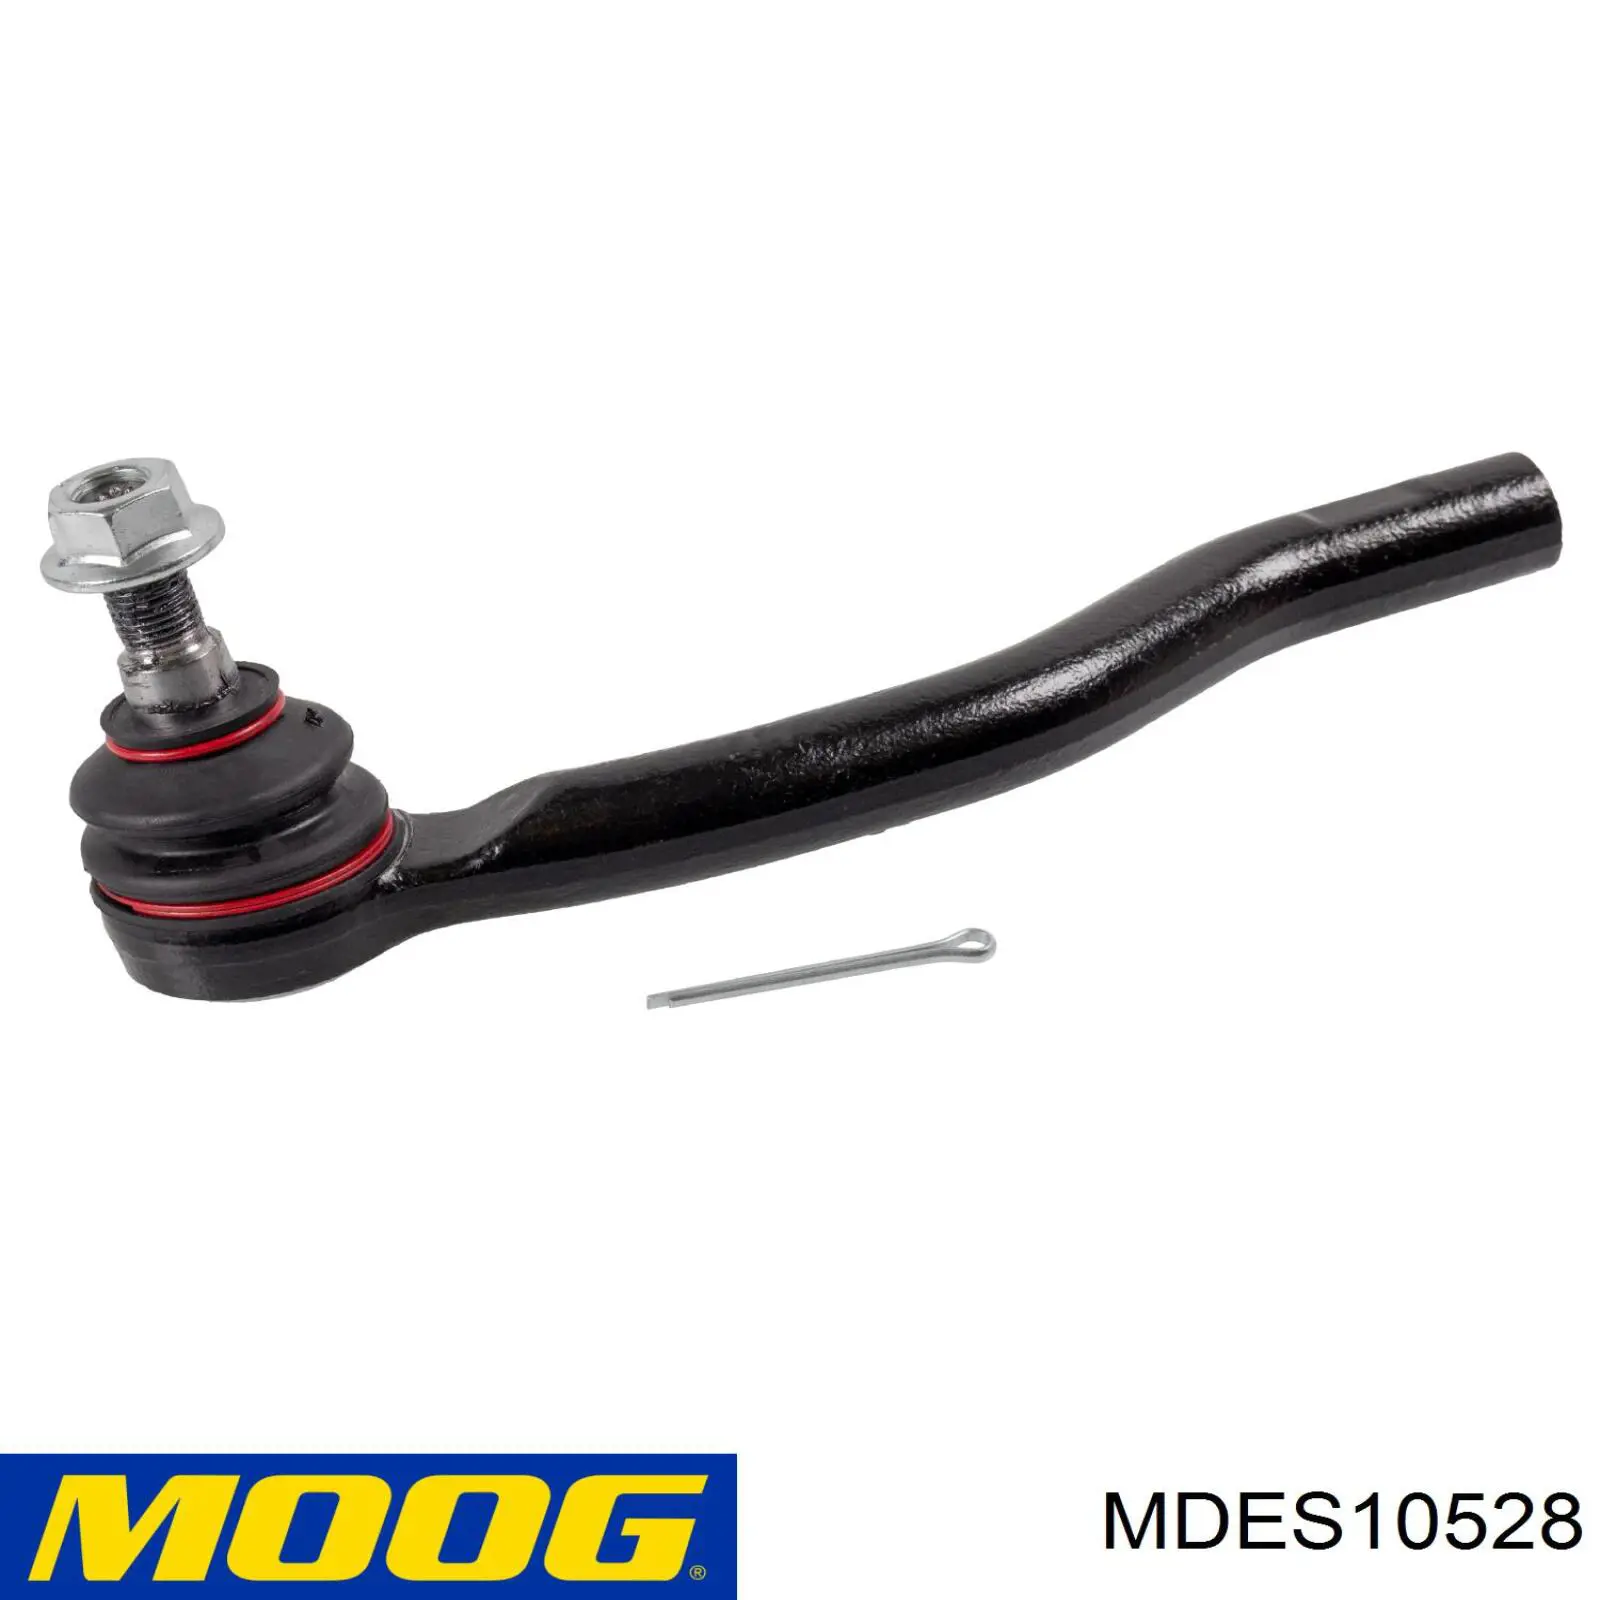 Rótula barra de acoplamiento exterior MDES10528 Moog